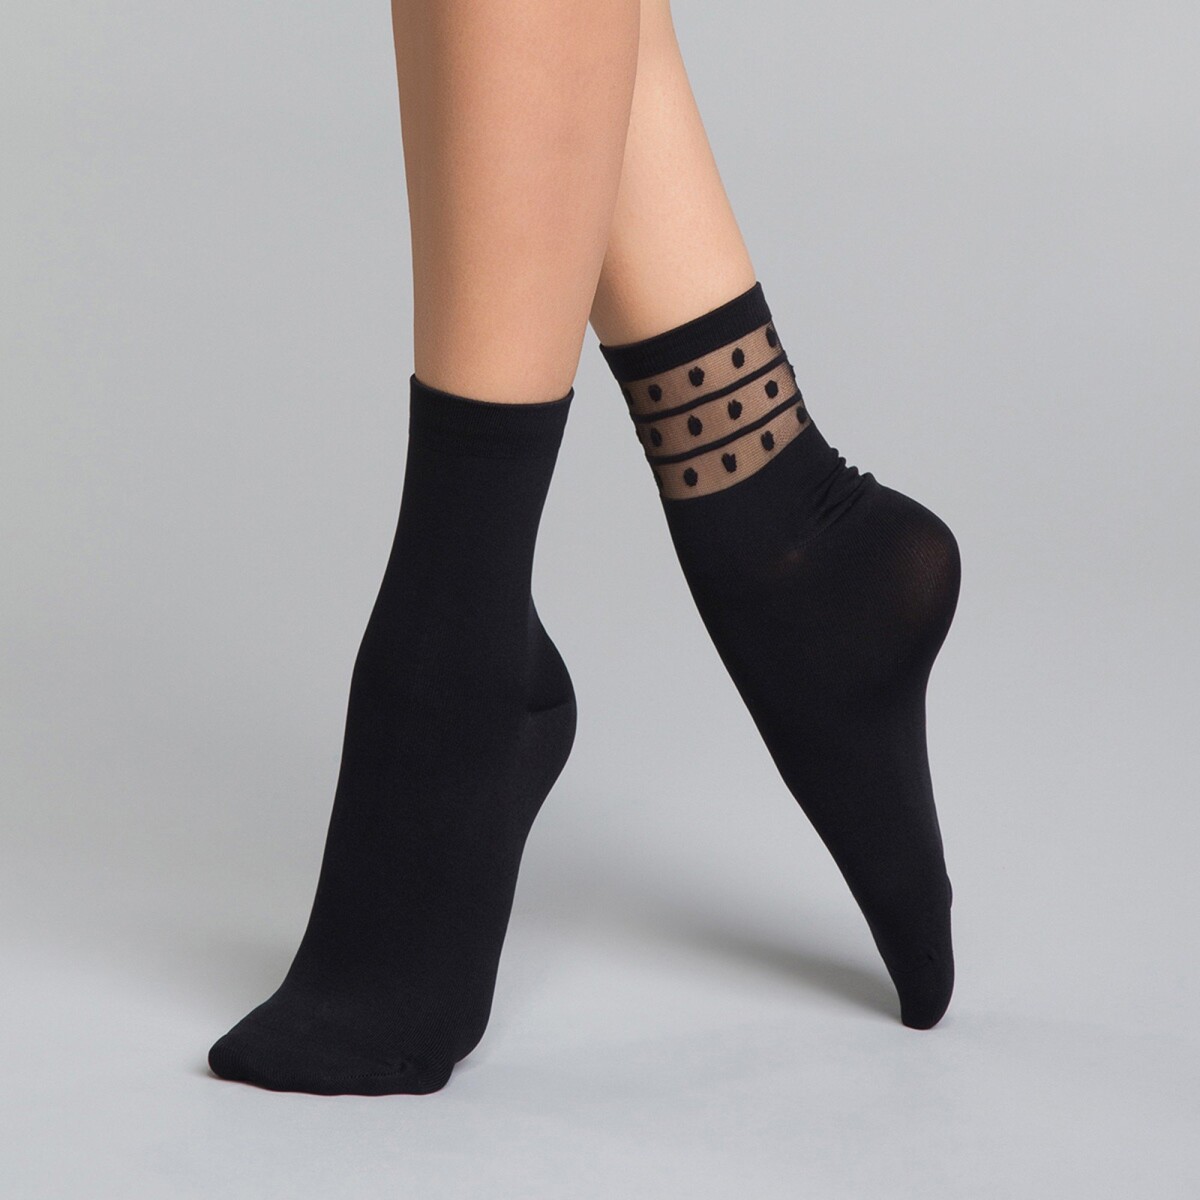 Súprava 2 párov dámskych ponožiek z mikrovlákna Skin čierna uni